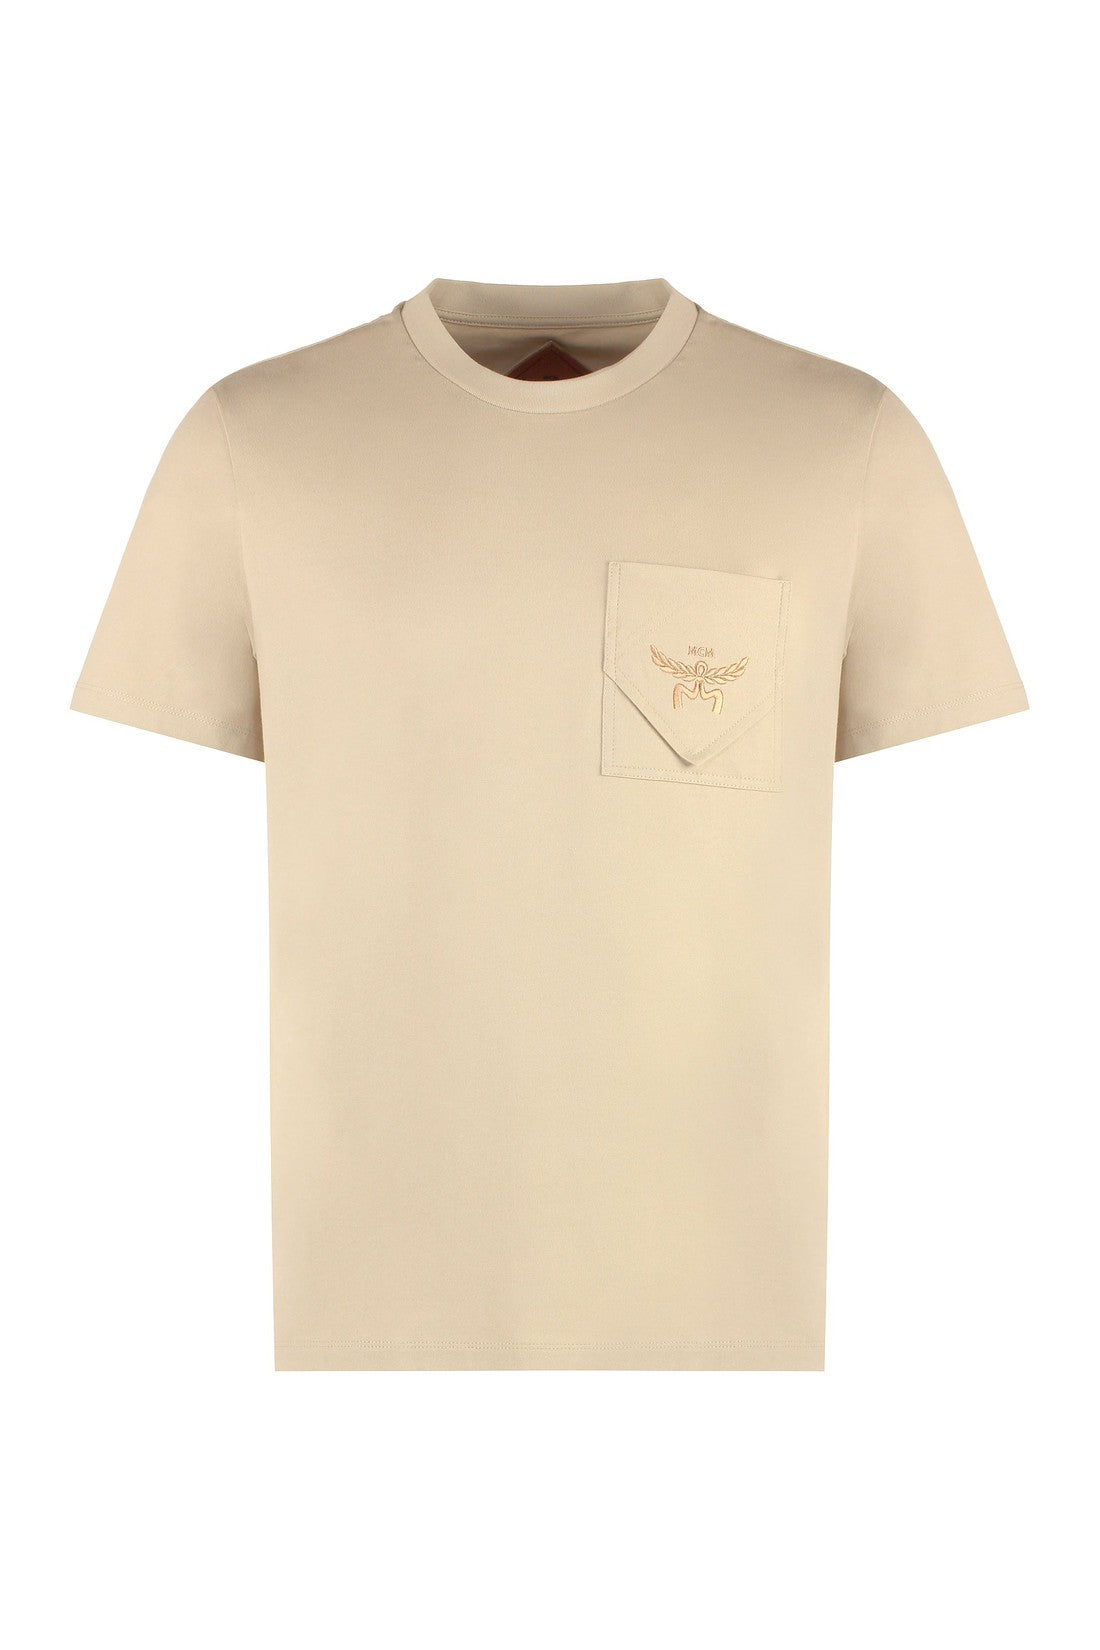 MCM-OUTLET-SALE-Cotton crew-neck T-shirt-ARCHIVIST